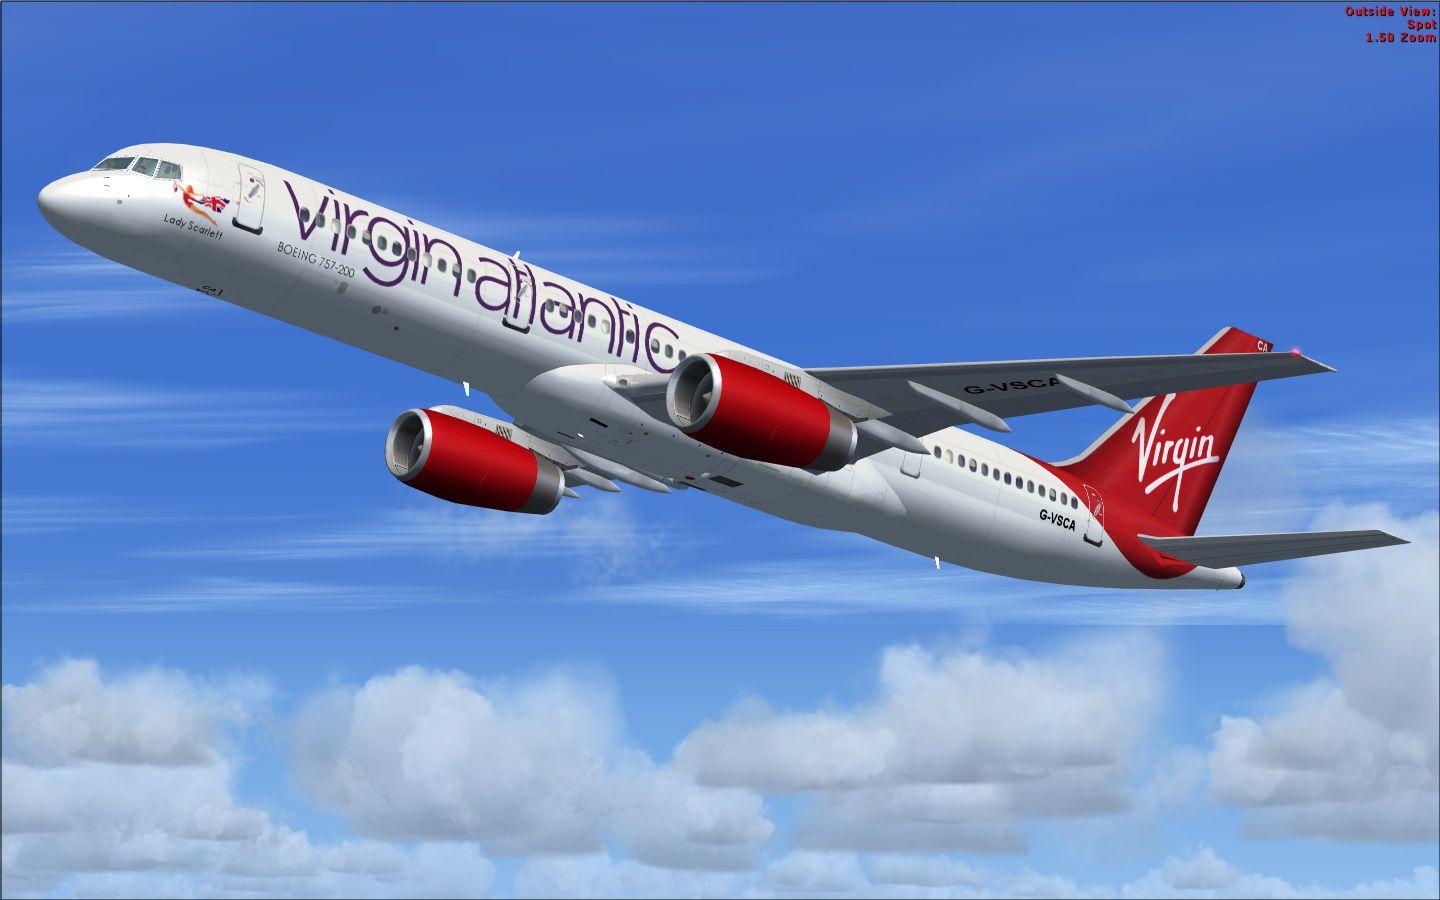 Virgin Atlantic Boeing 757 200